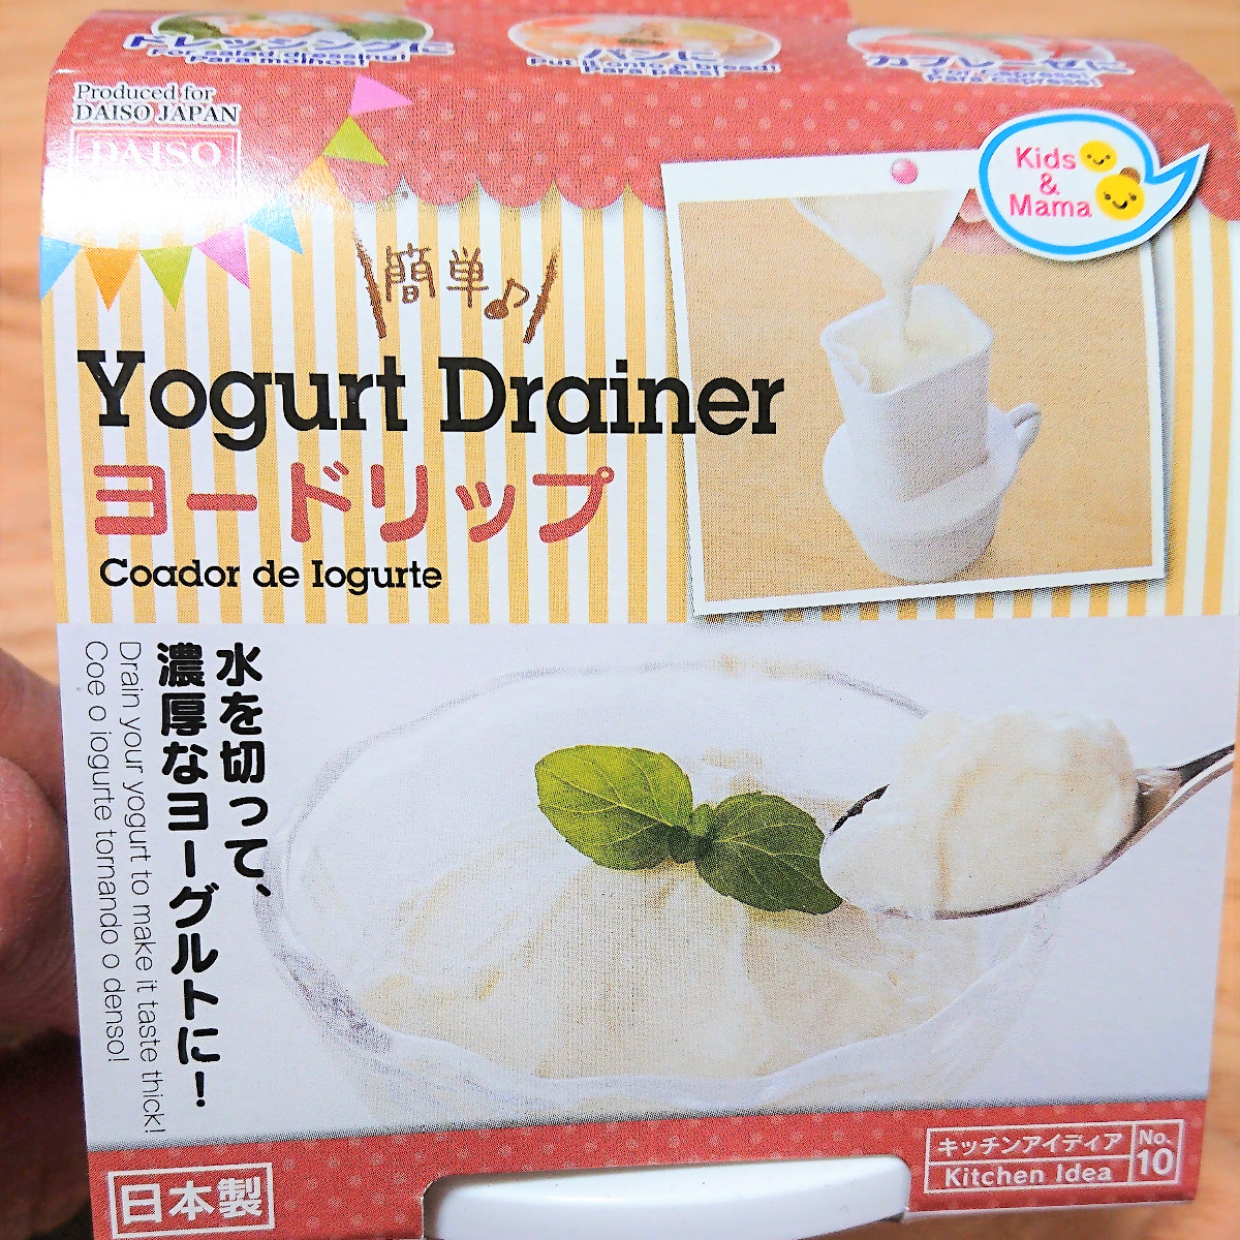  【ダイソー】自宅で濃密な水切りヨーグルトが簡単に作れる「ヨードリップ」が優秀すぎる♪ 